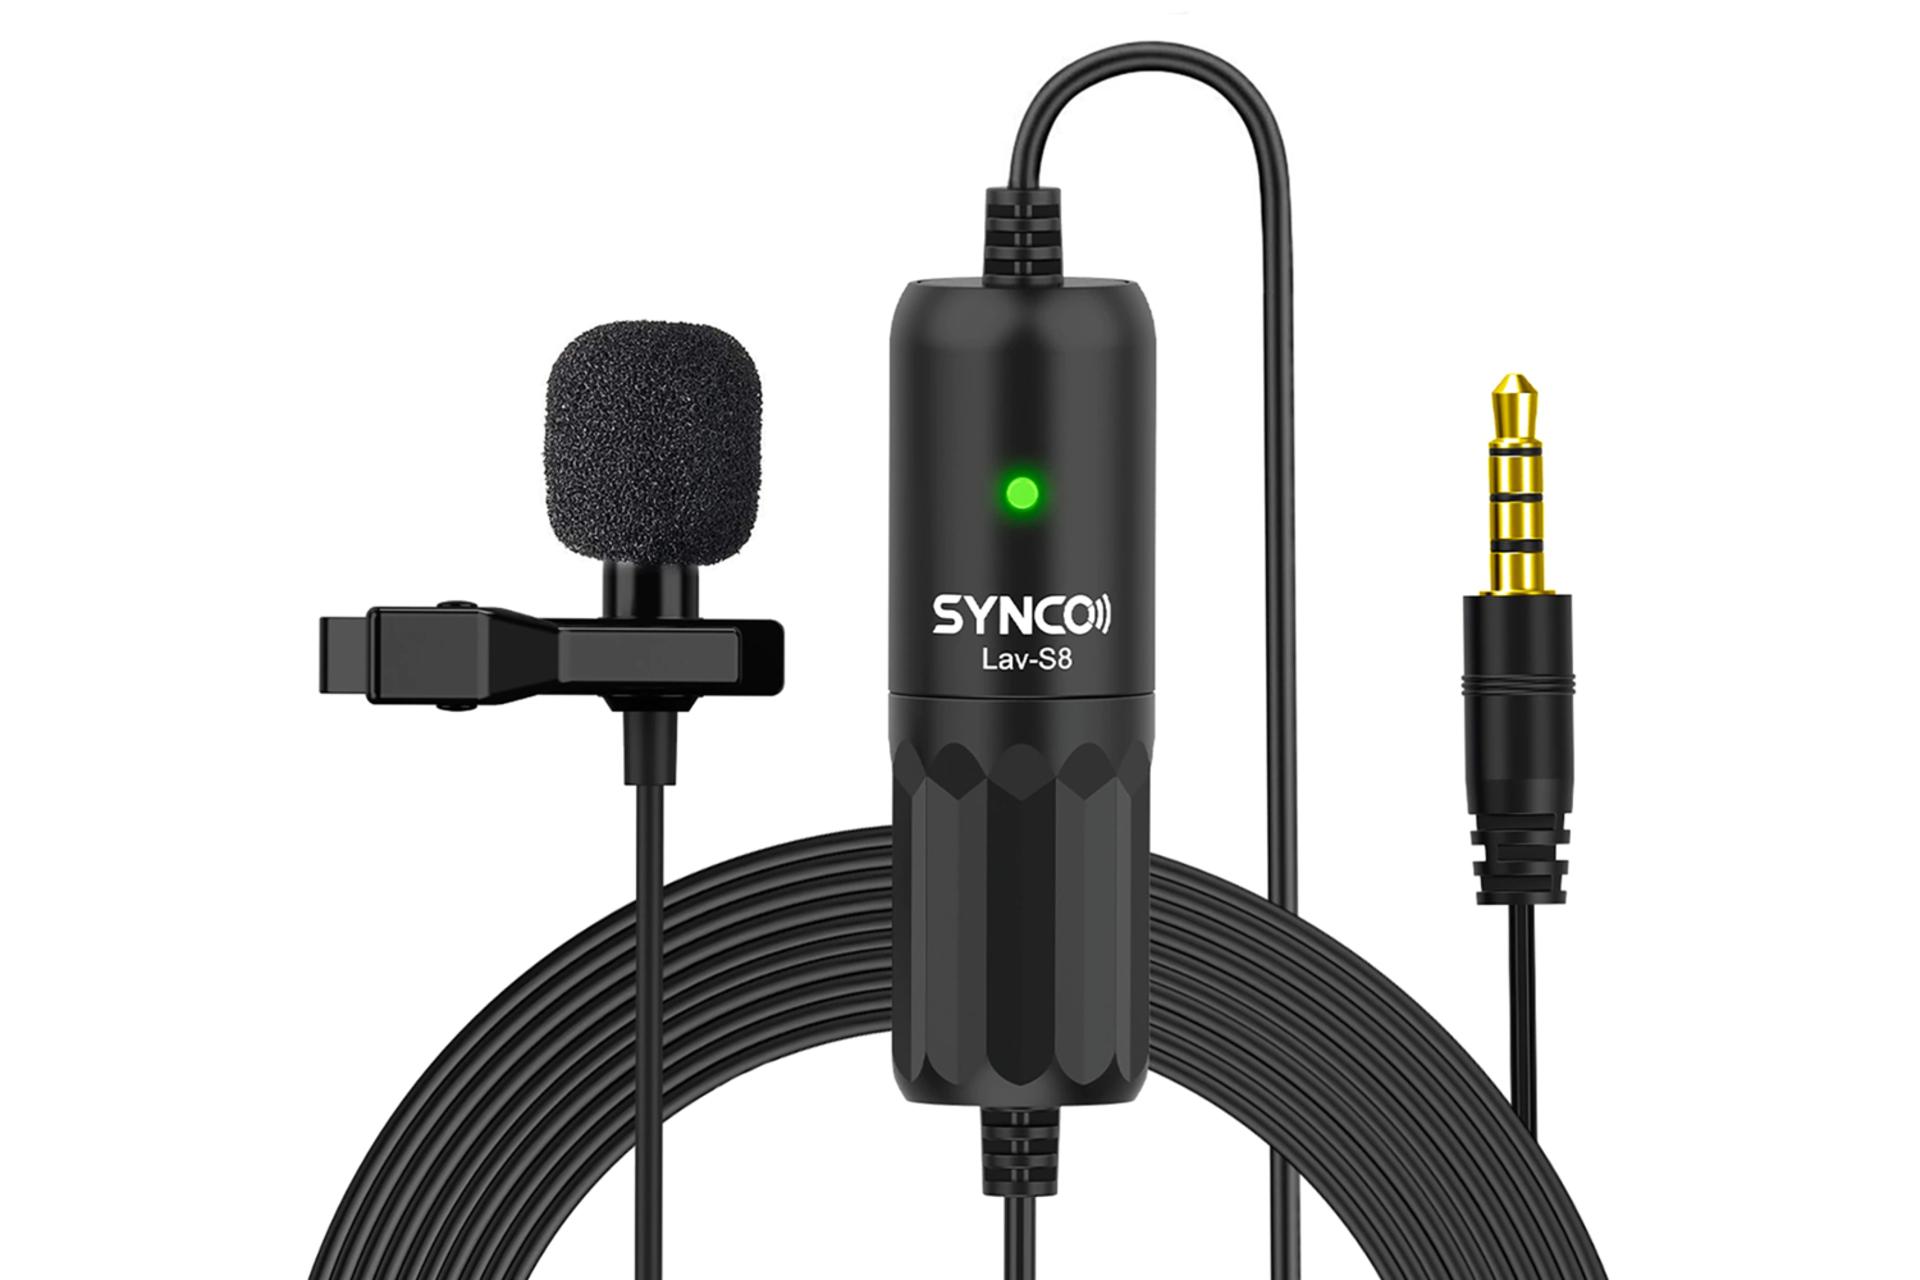 طراحی میکروفون سینکو SYNCO Lav-S8